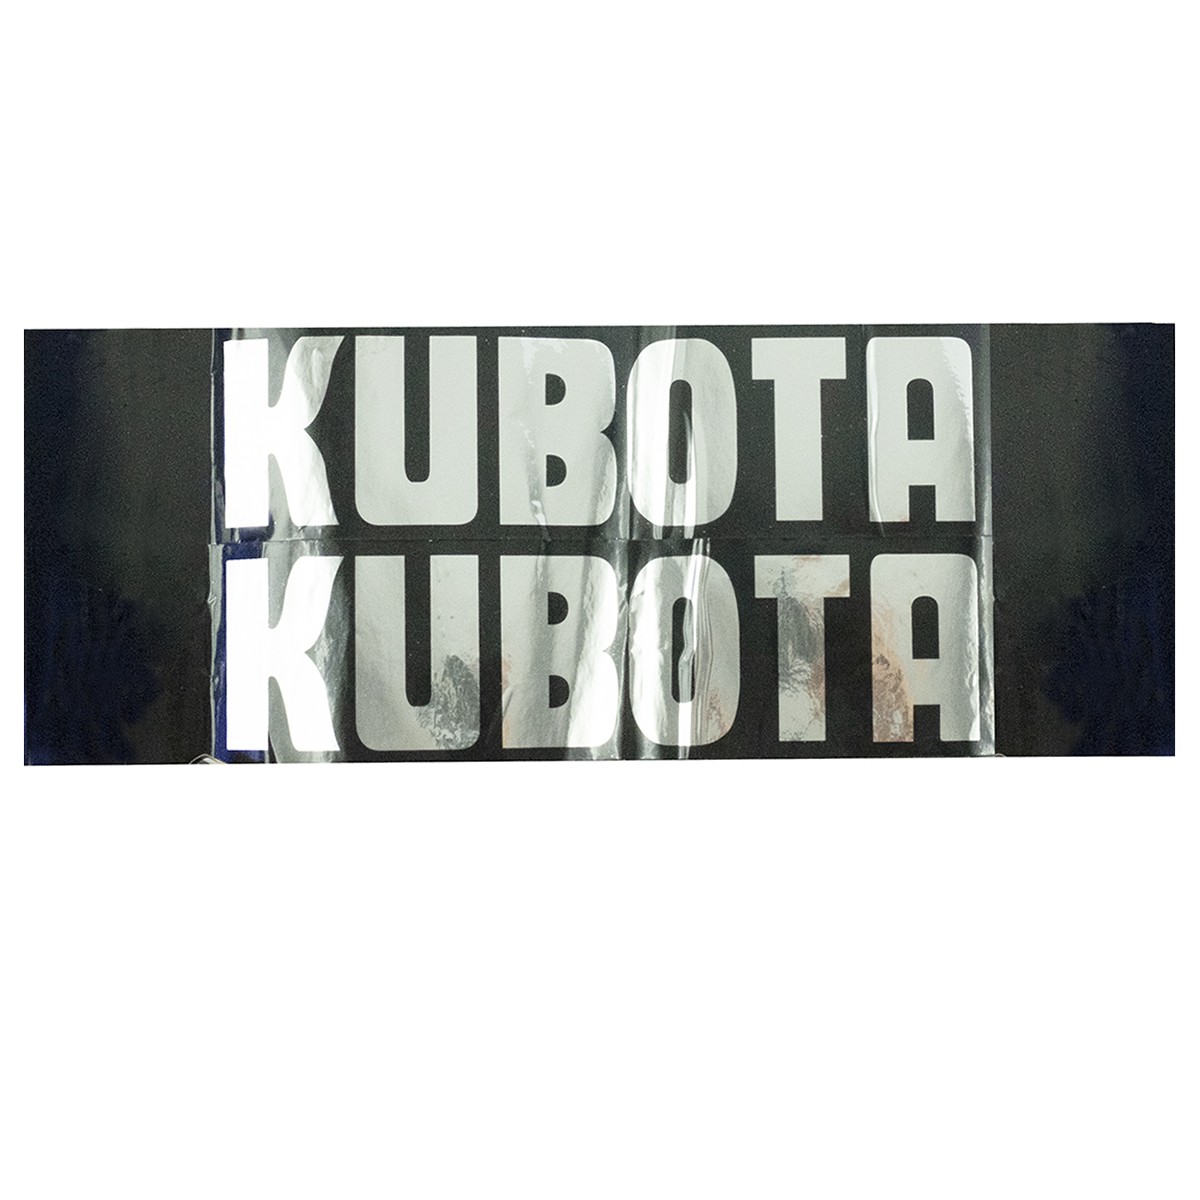 Stickers Kubota B, Kubota B5000, B5001, B6000, B6001, B7000, B7001